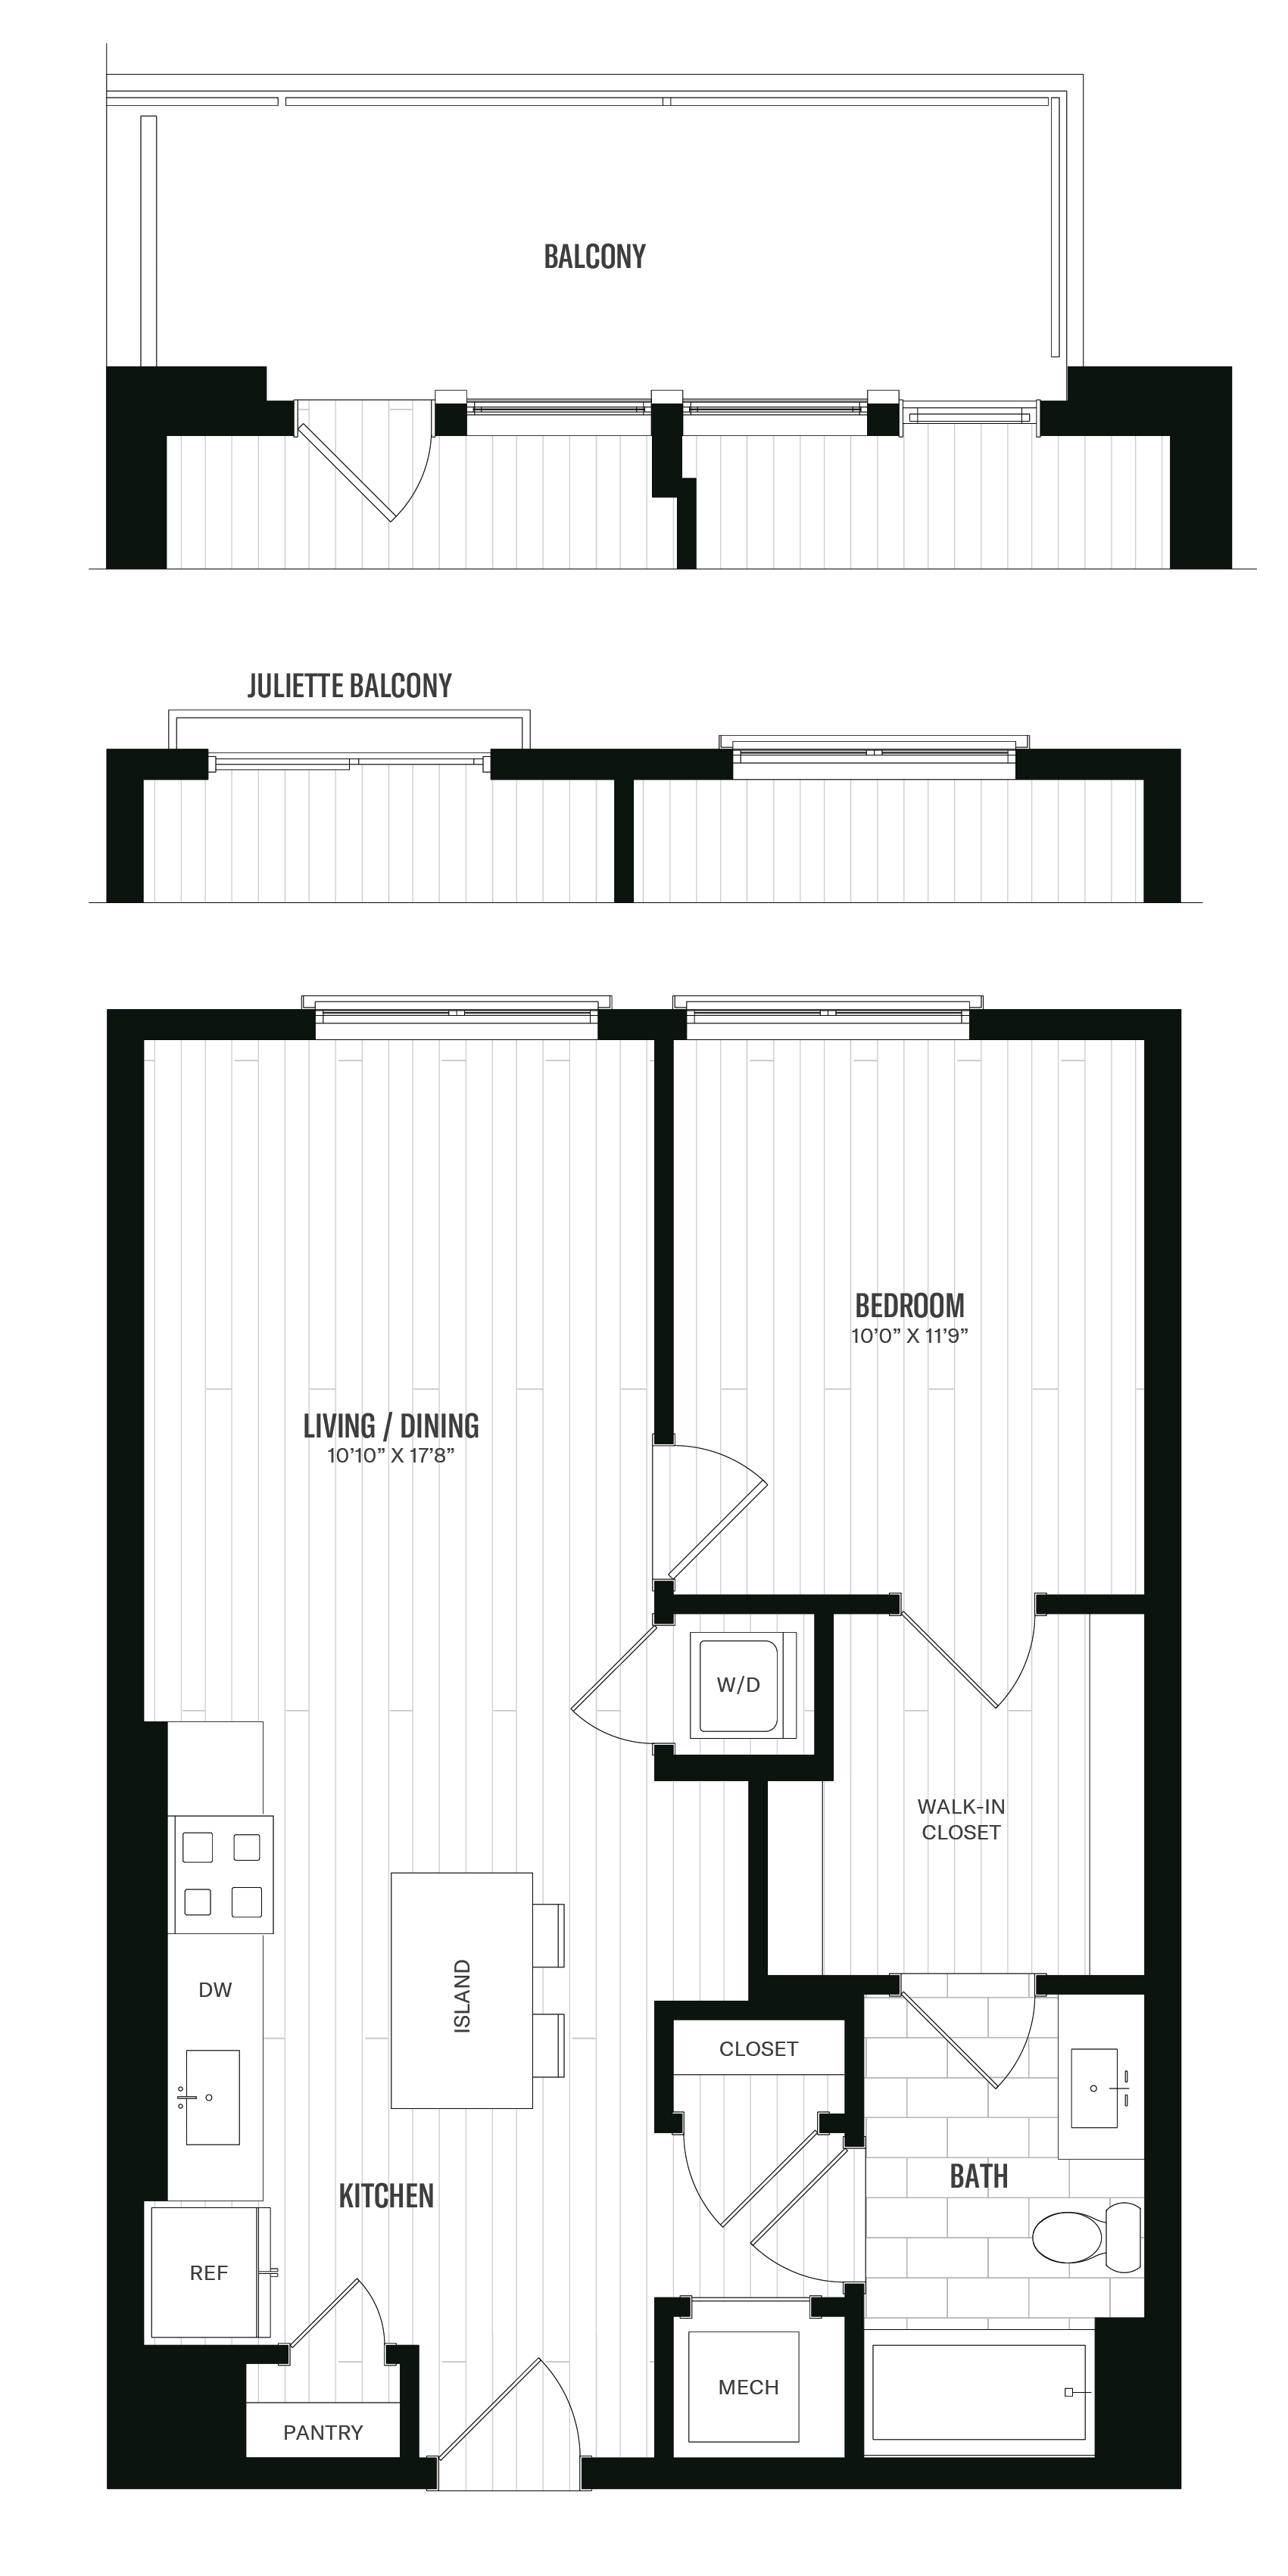 Floorplan image of unit 352